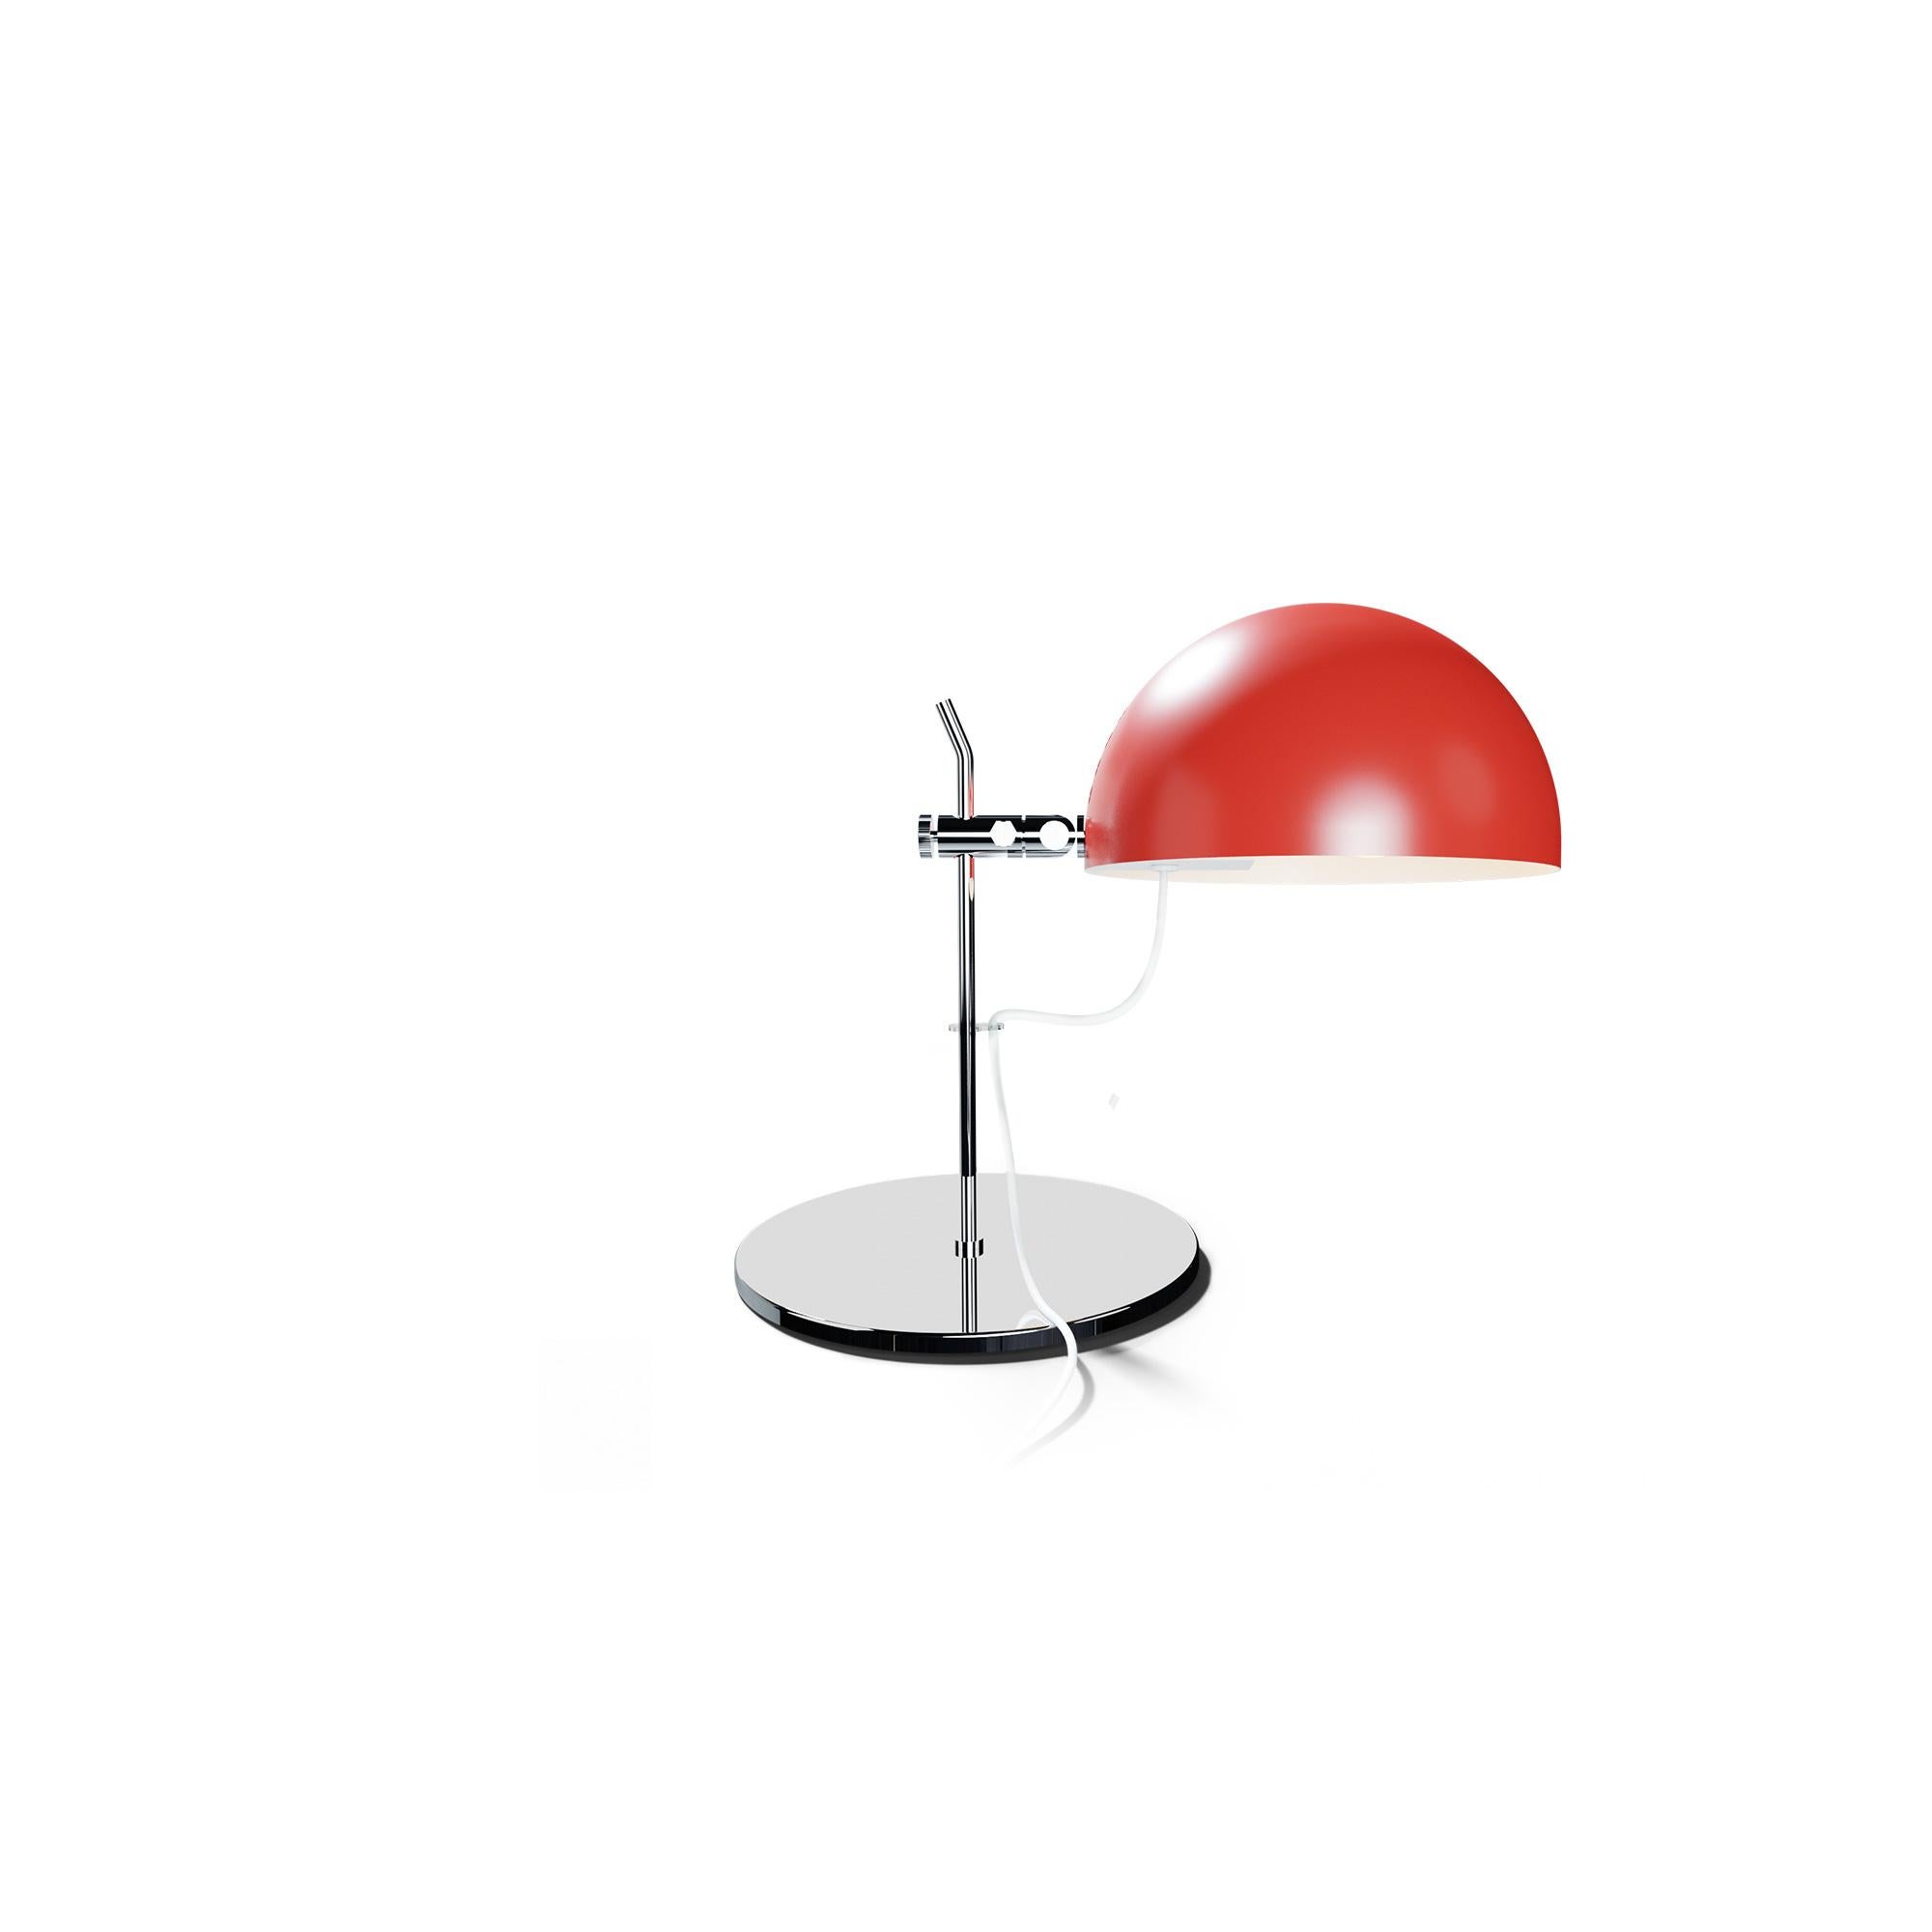 Alain Richard 'A22' Desk Lamp in White for Disderot For Sale 4